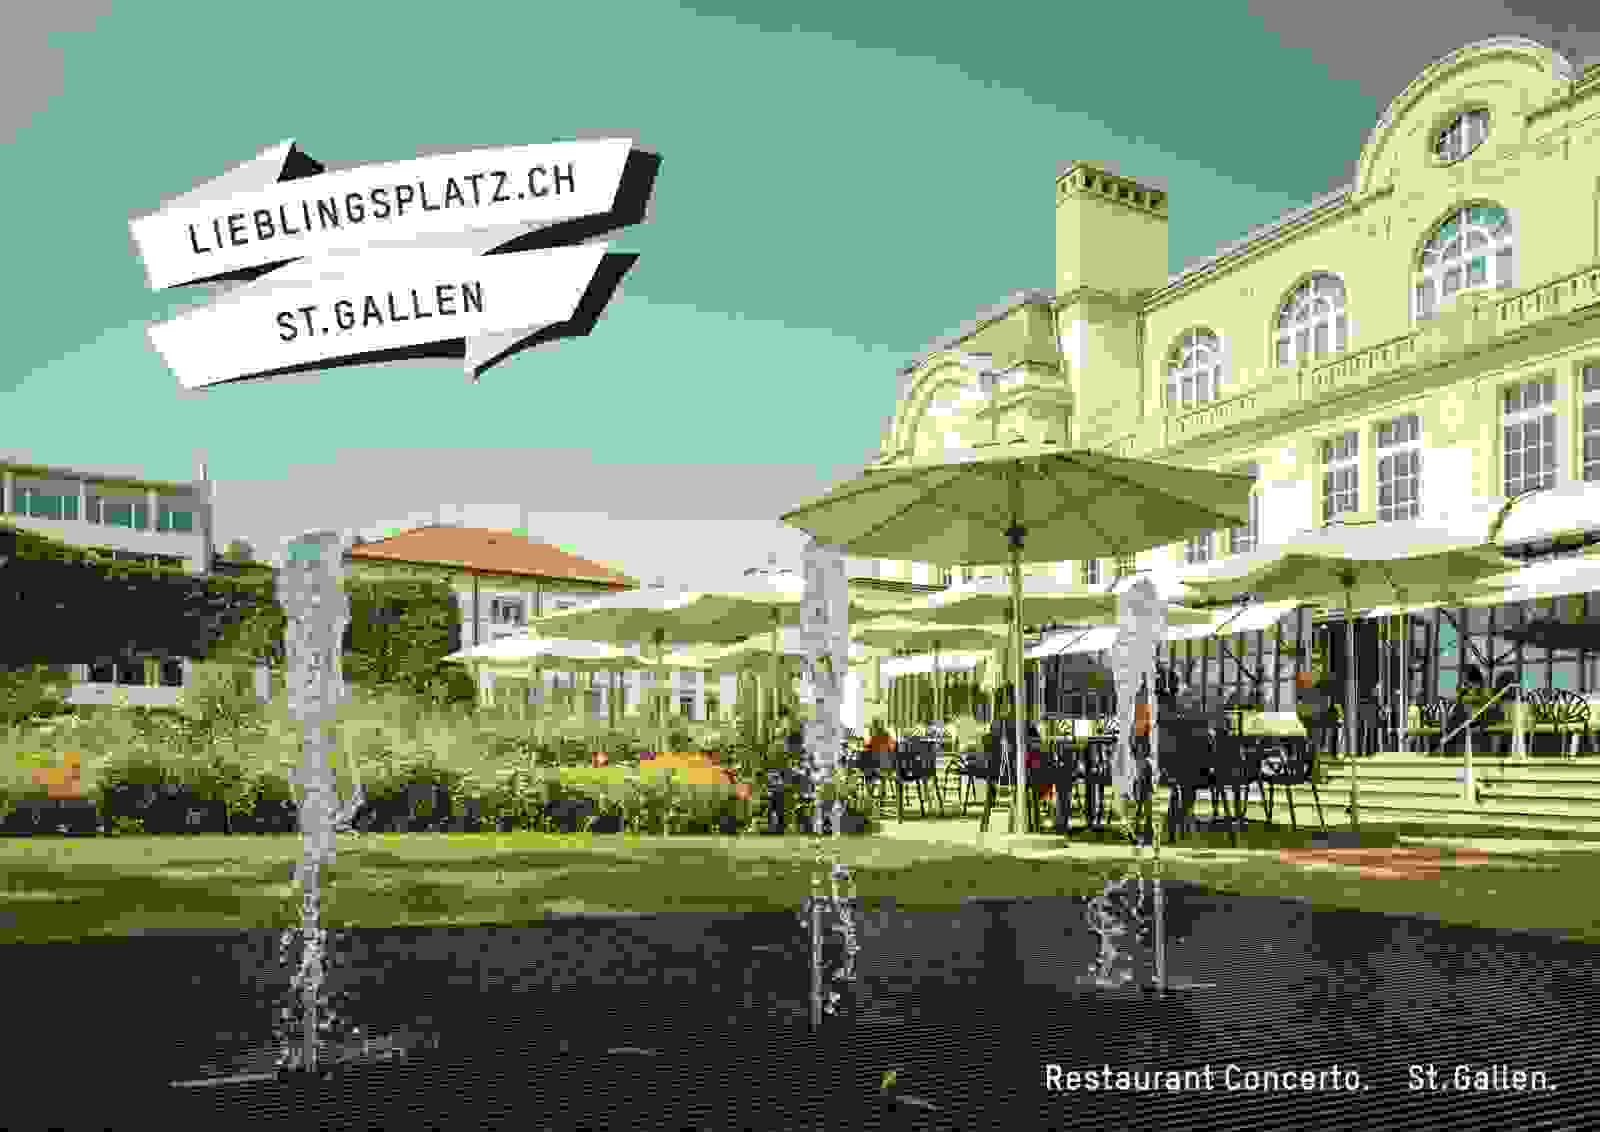 Kampagne über Lieblingsplätze der Standortförderung Stadt St.Gallen